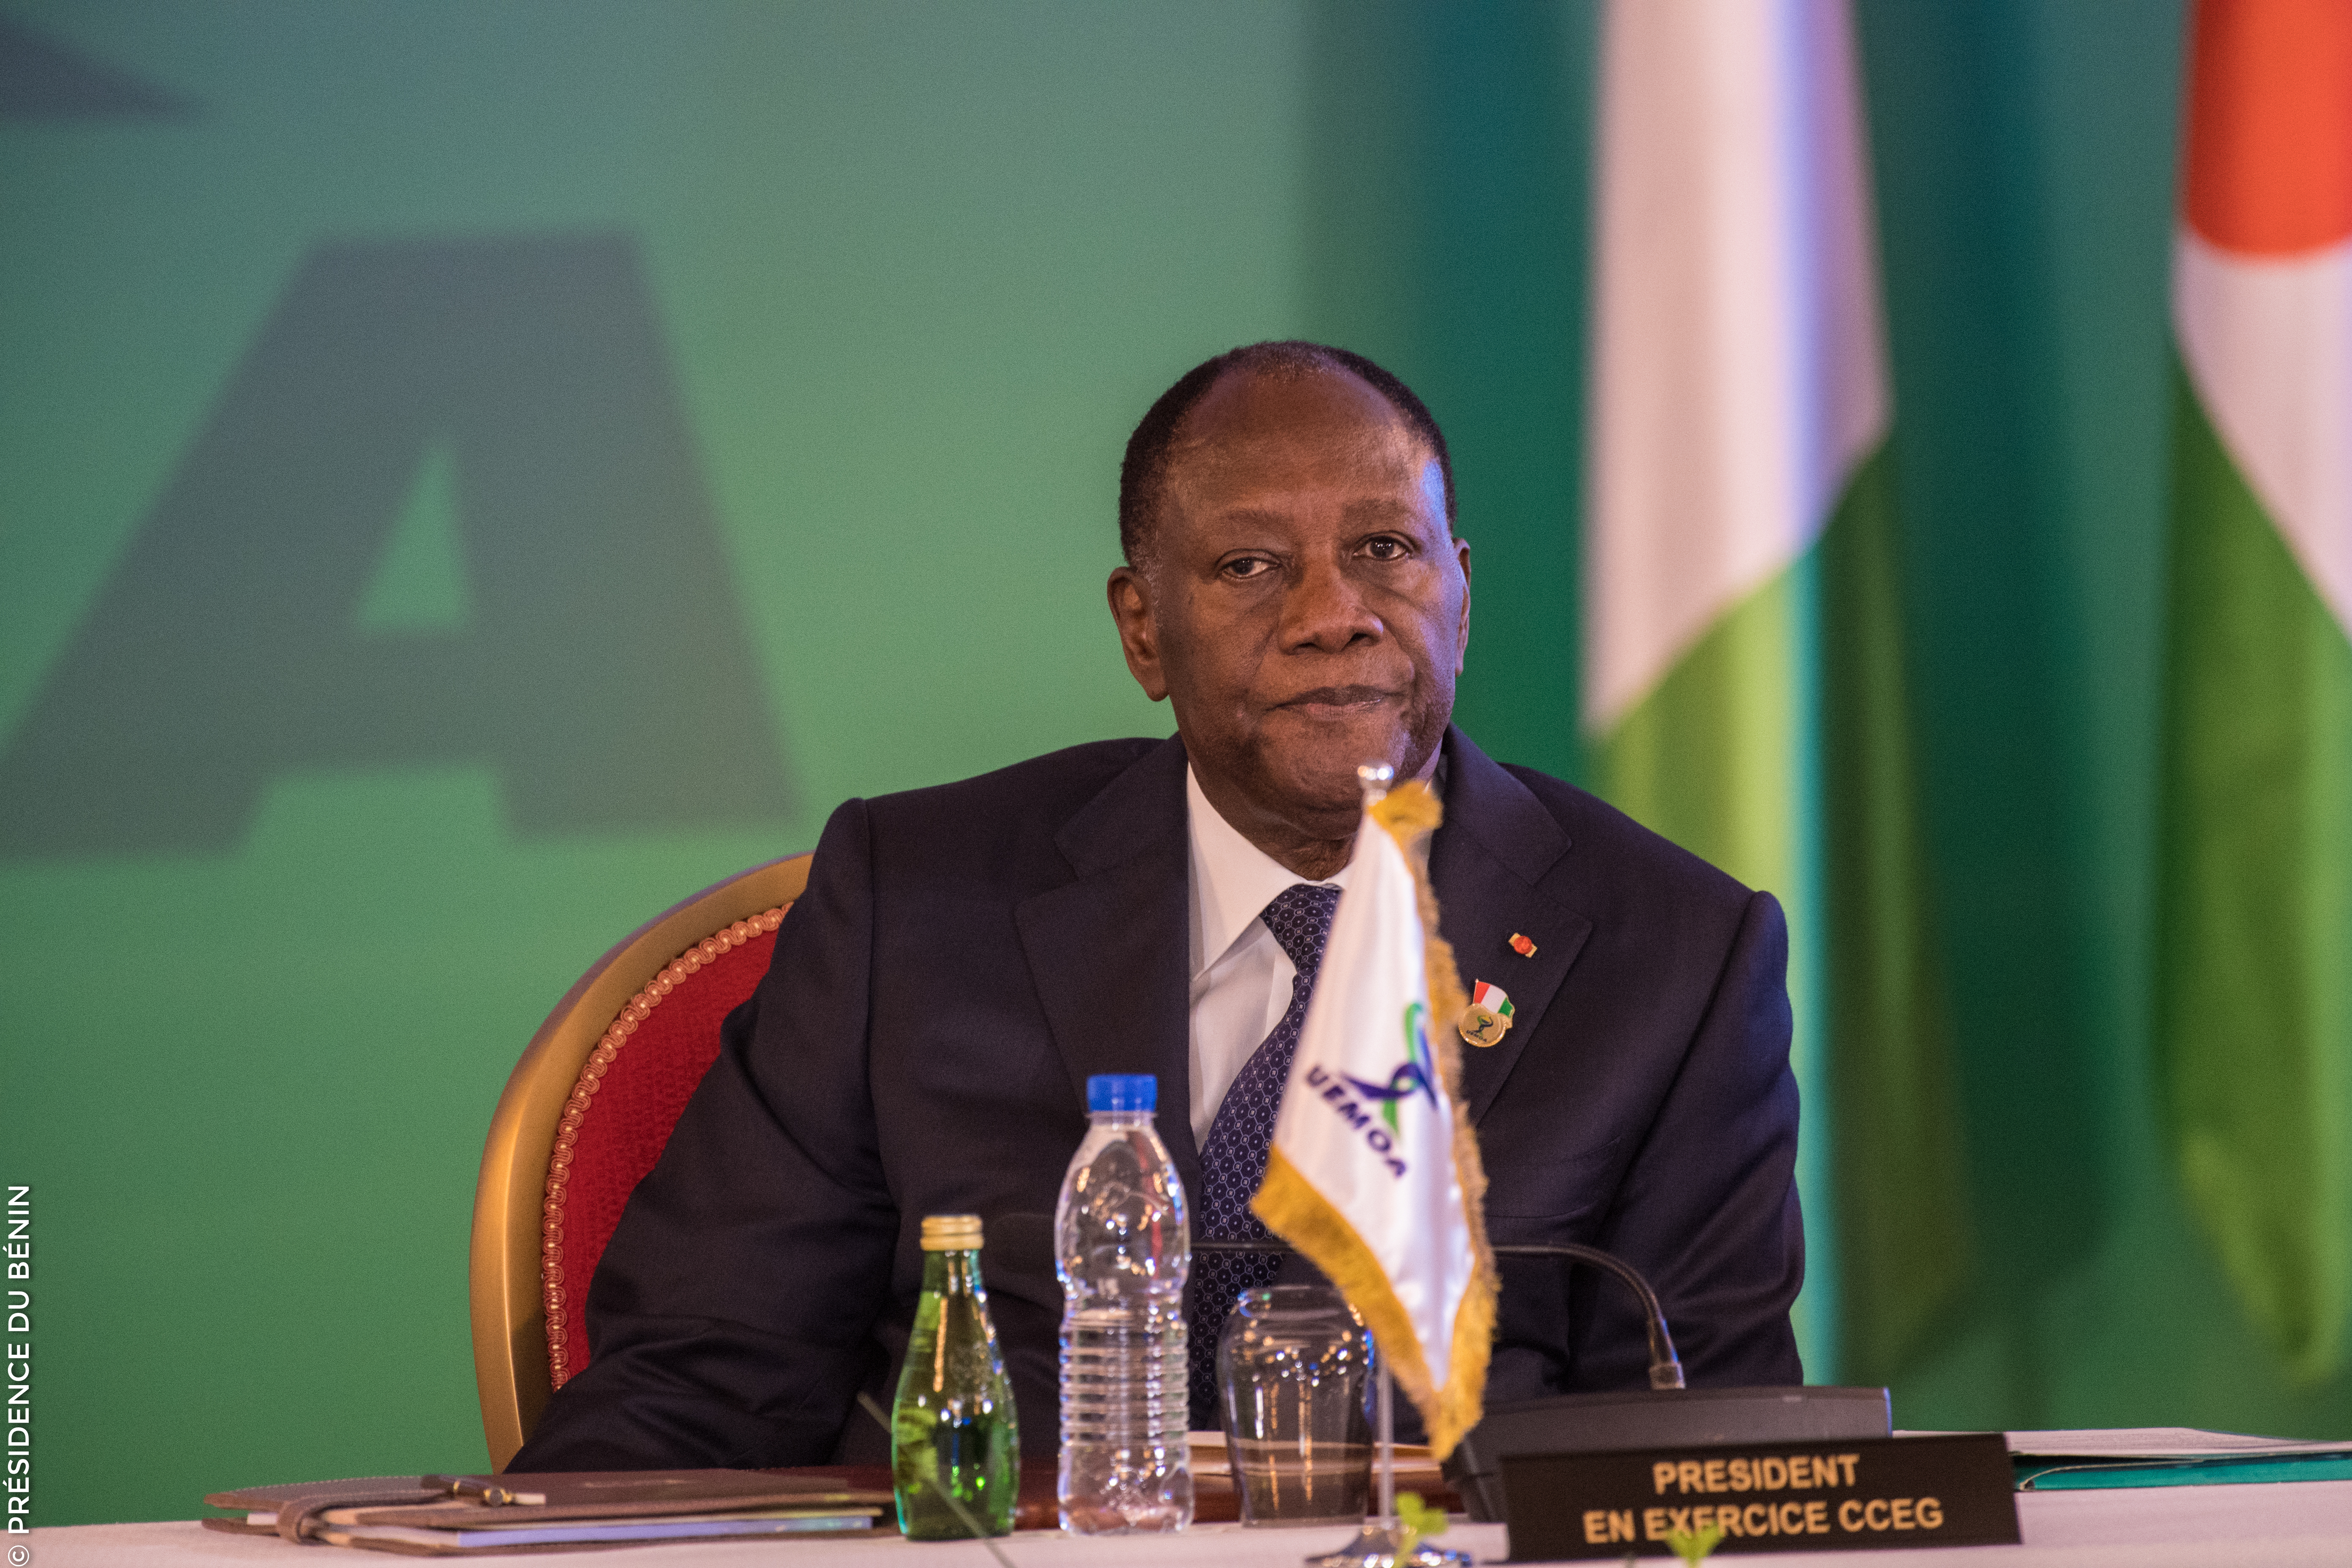 President Alassane Ouattara of Ivory Coast (photo credit: Présidence de la République du Bénin/flickr)